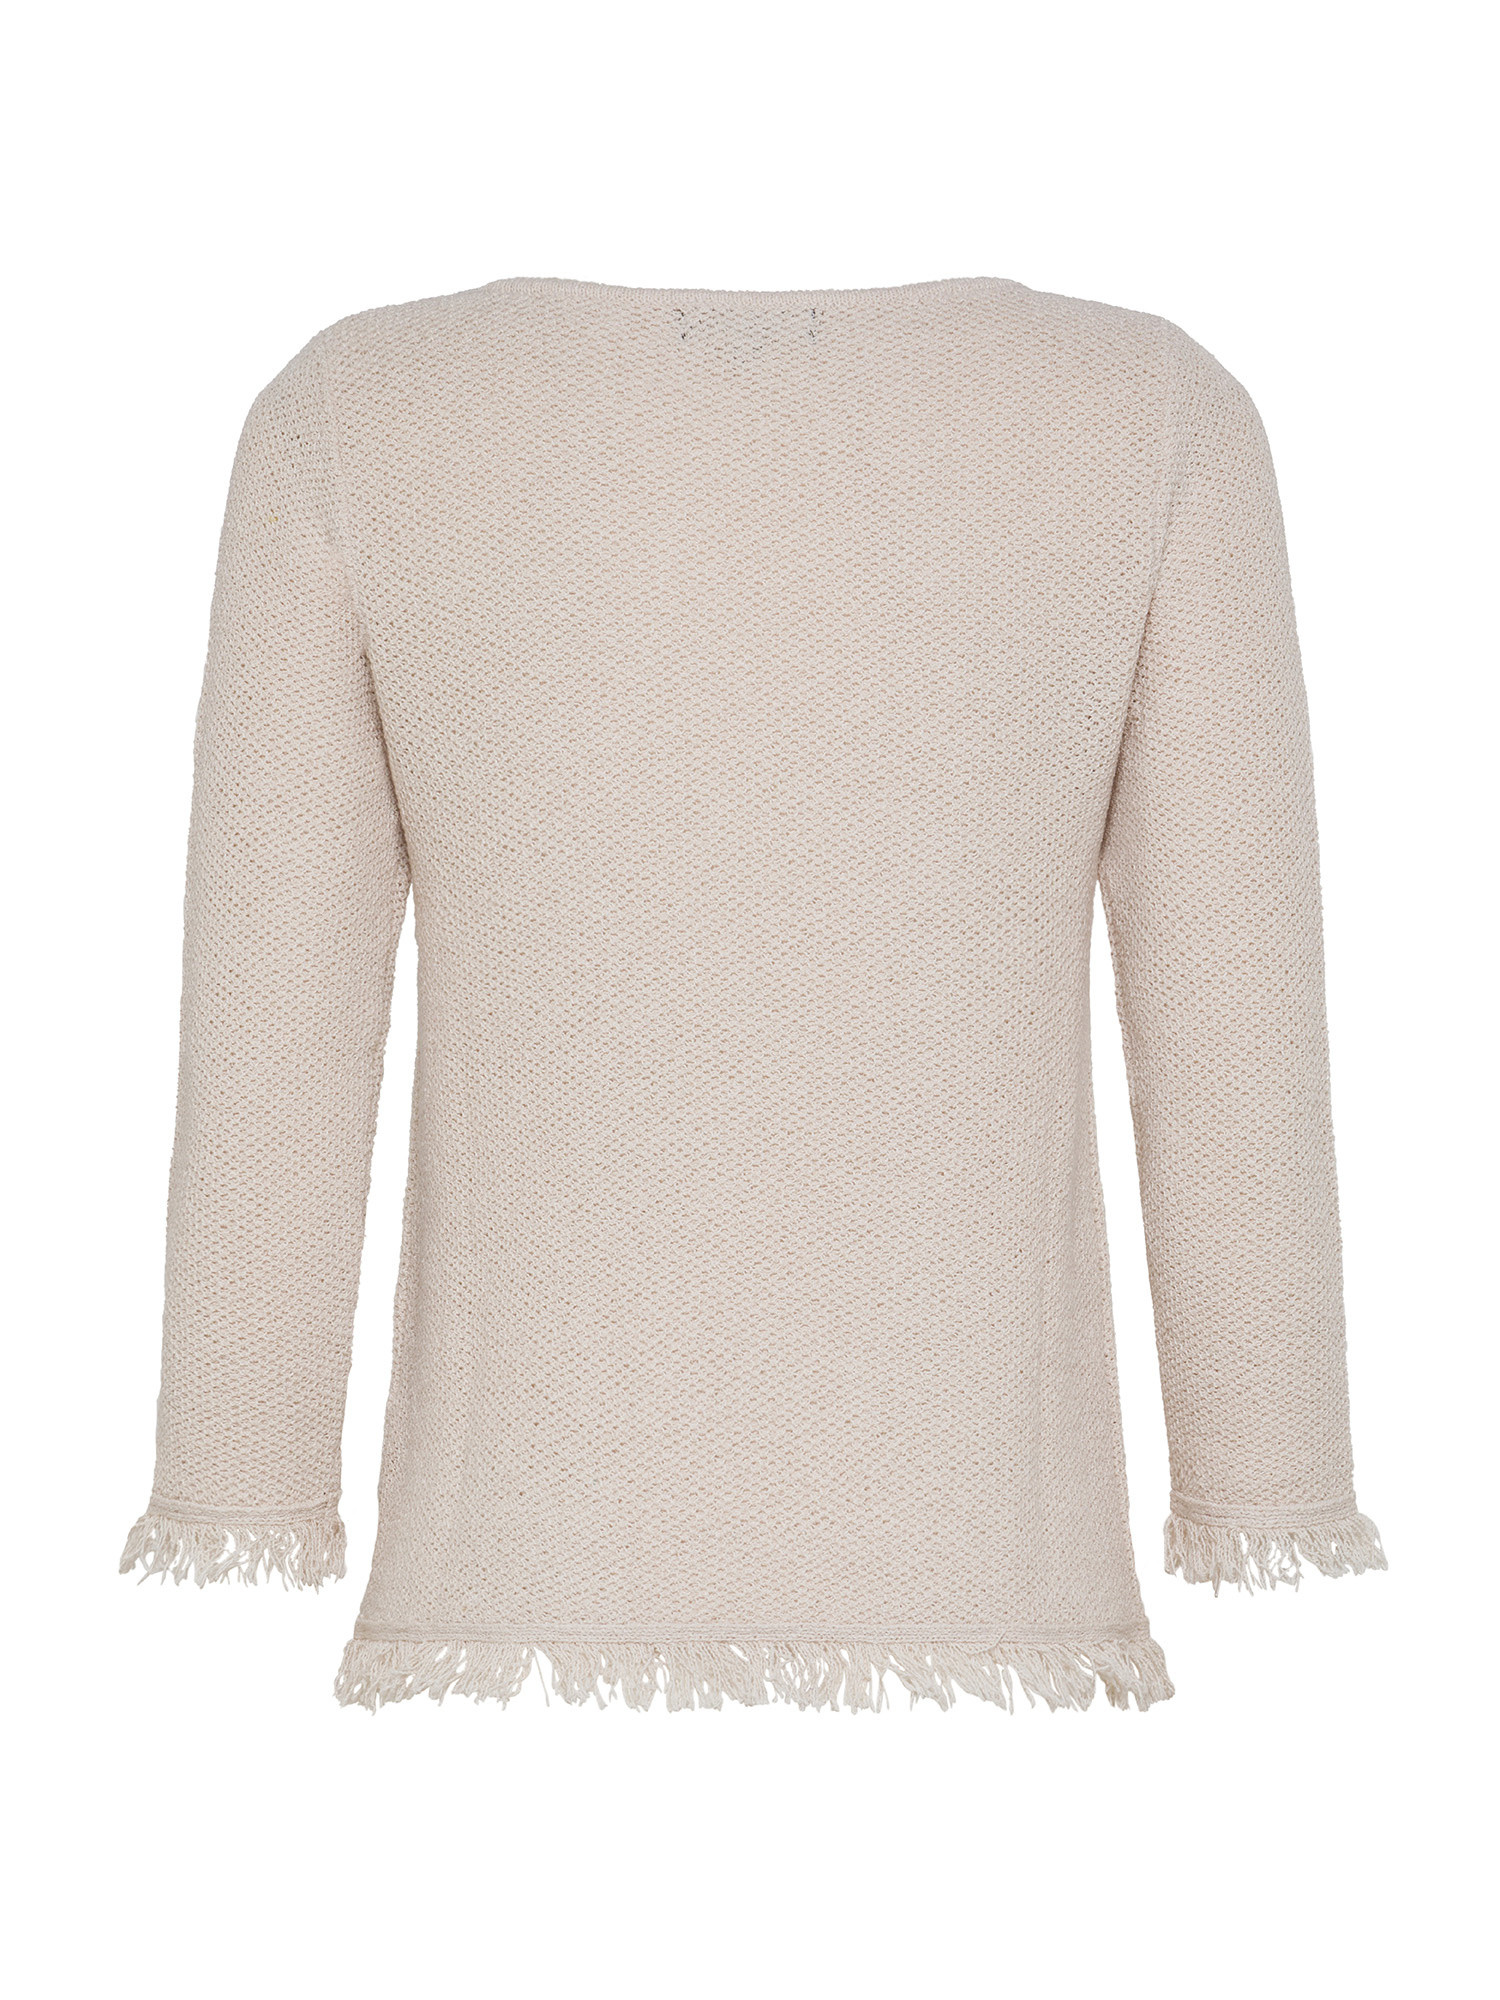 Koan - Pullover with fringes, Light Beige, large image number 1